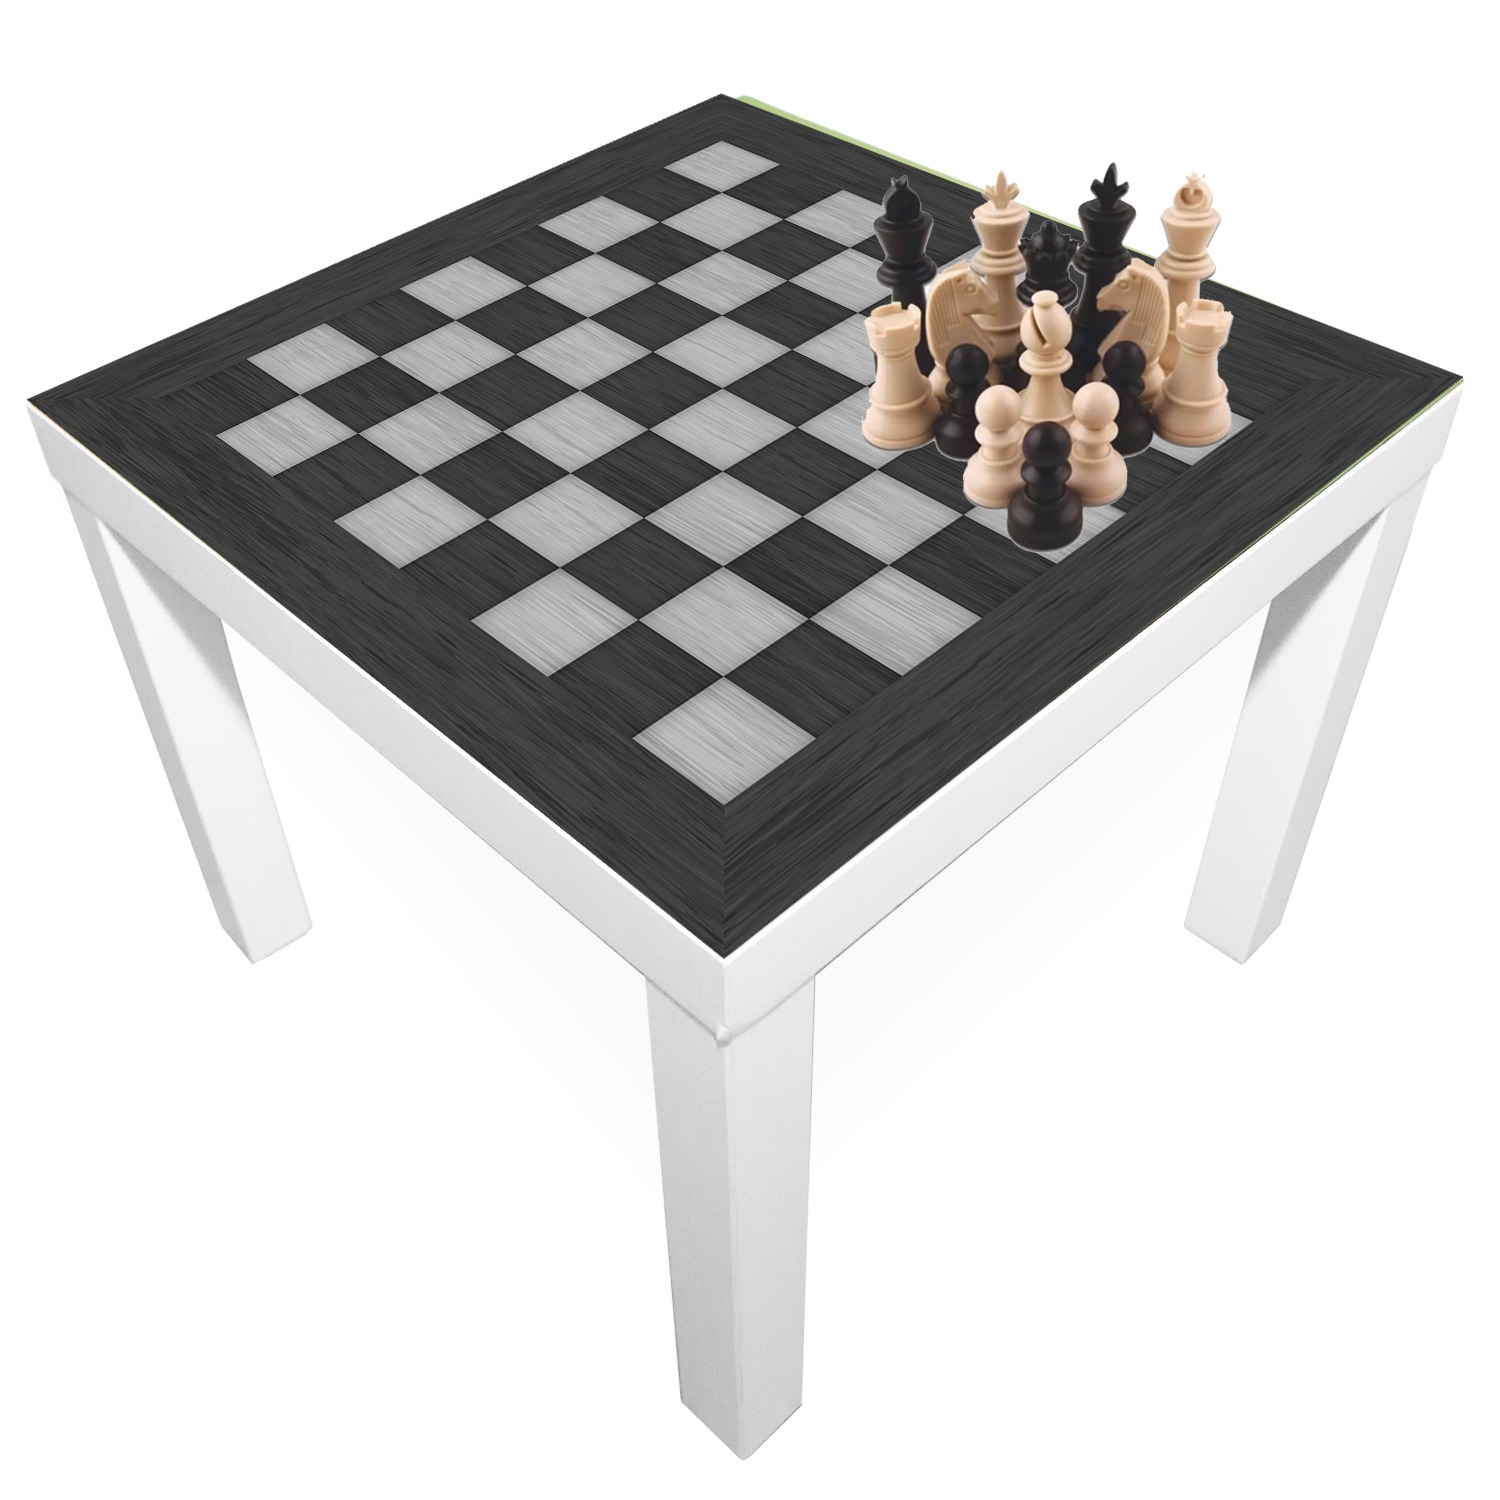 Schach Spiel inklusive Spielmatte - playmatt